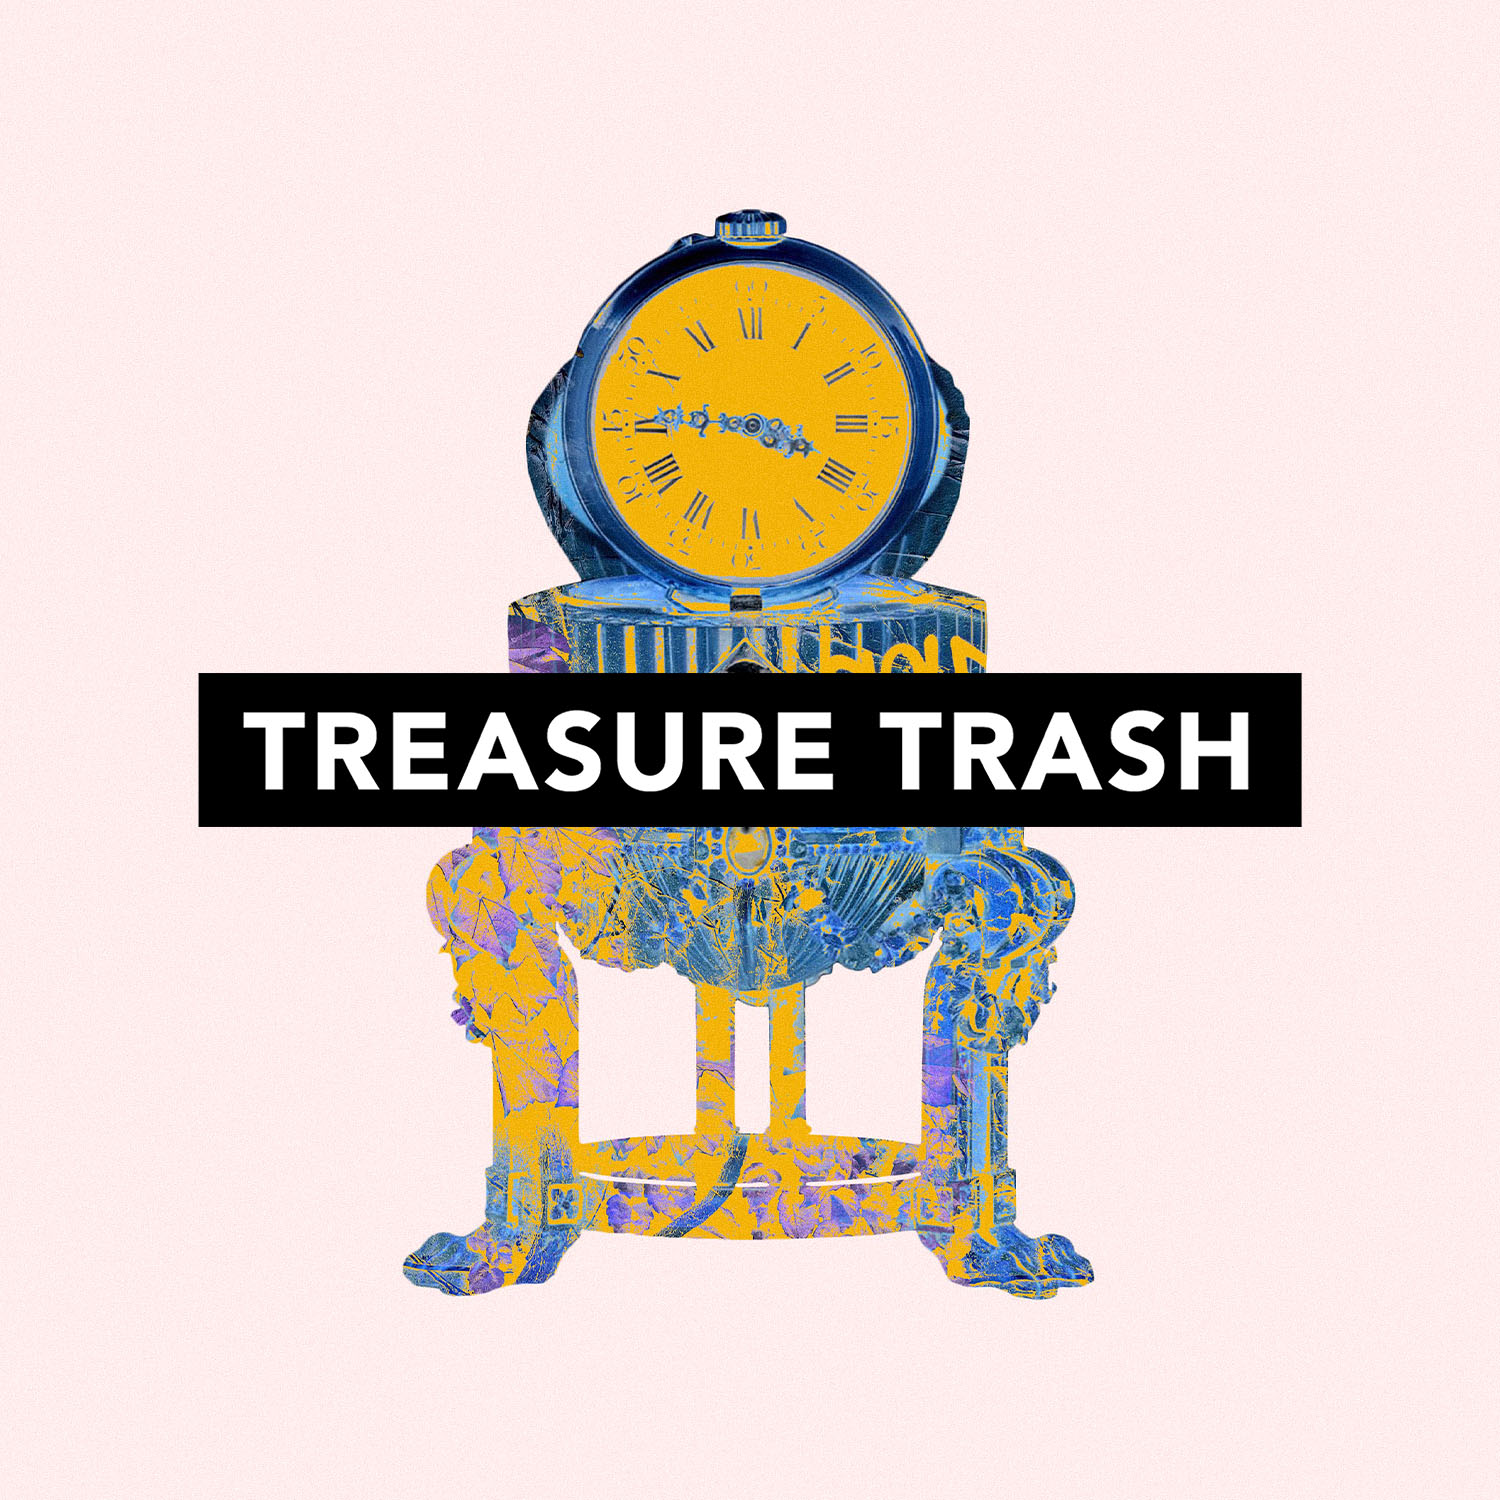 TreasureTrash